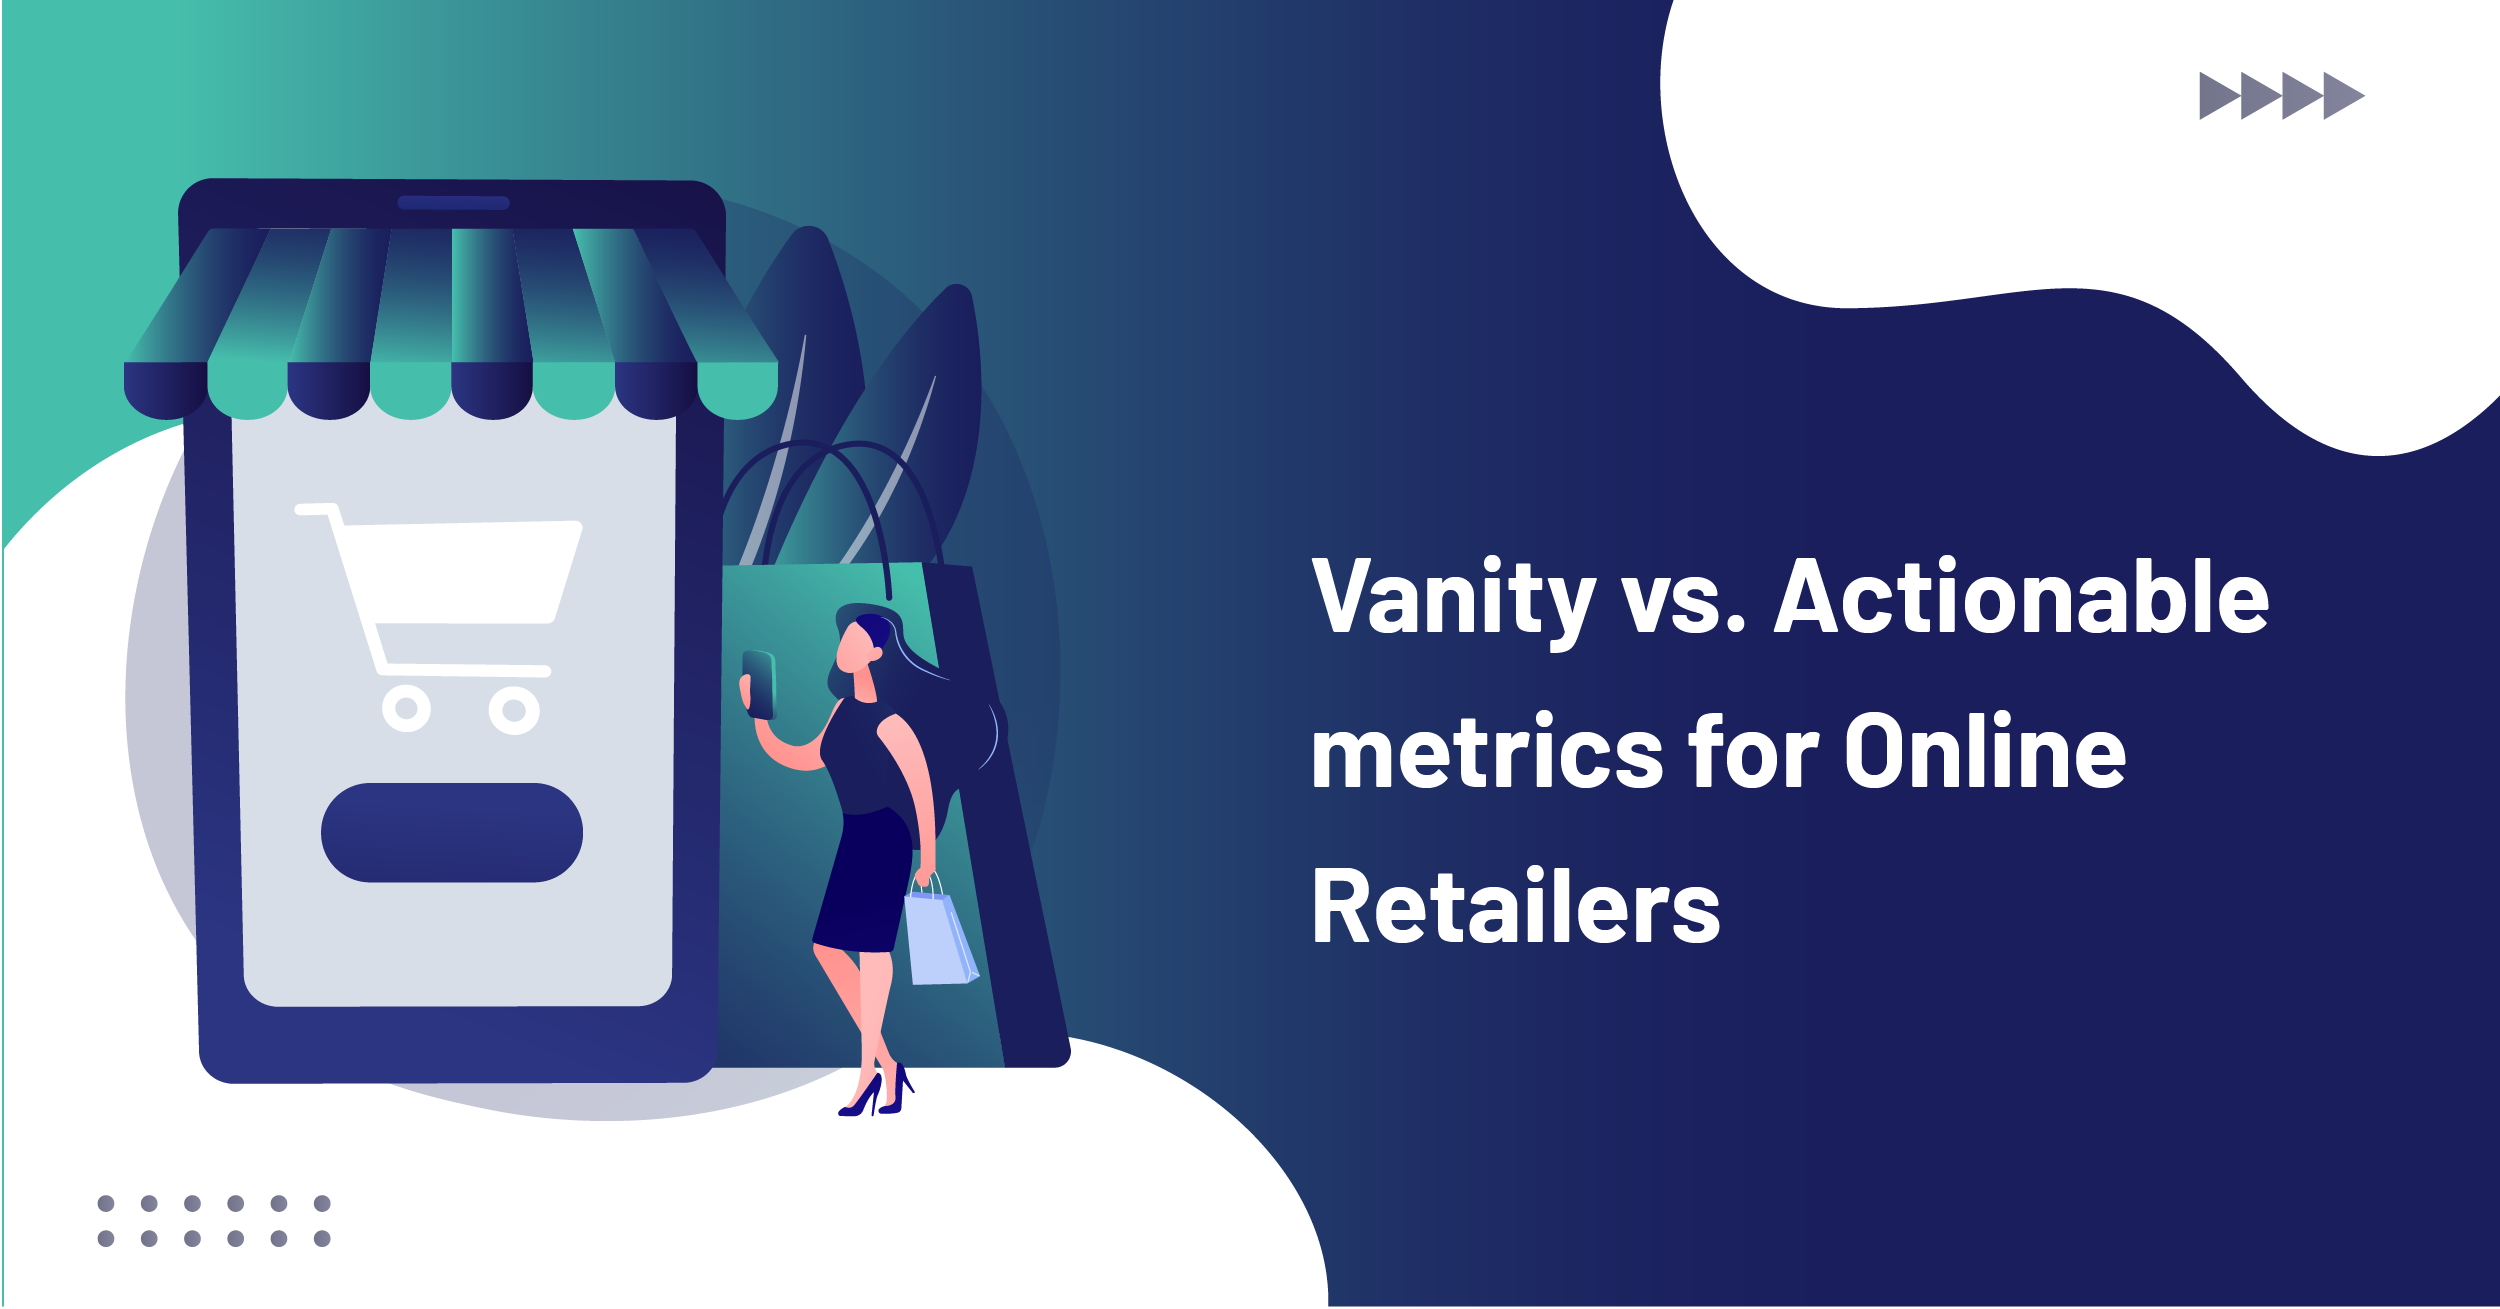 Vanity vs. Actionable metrics for Online Retailers